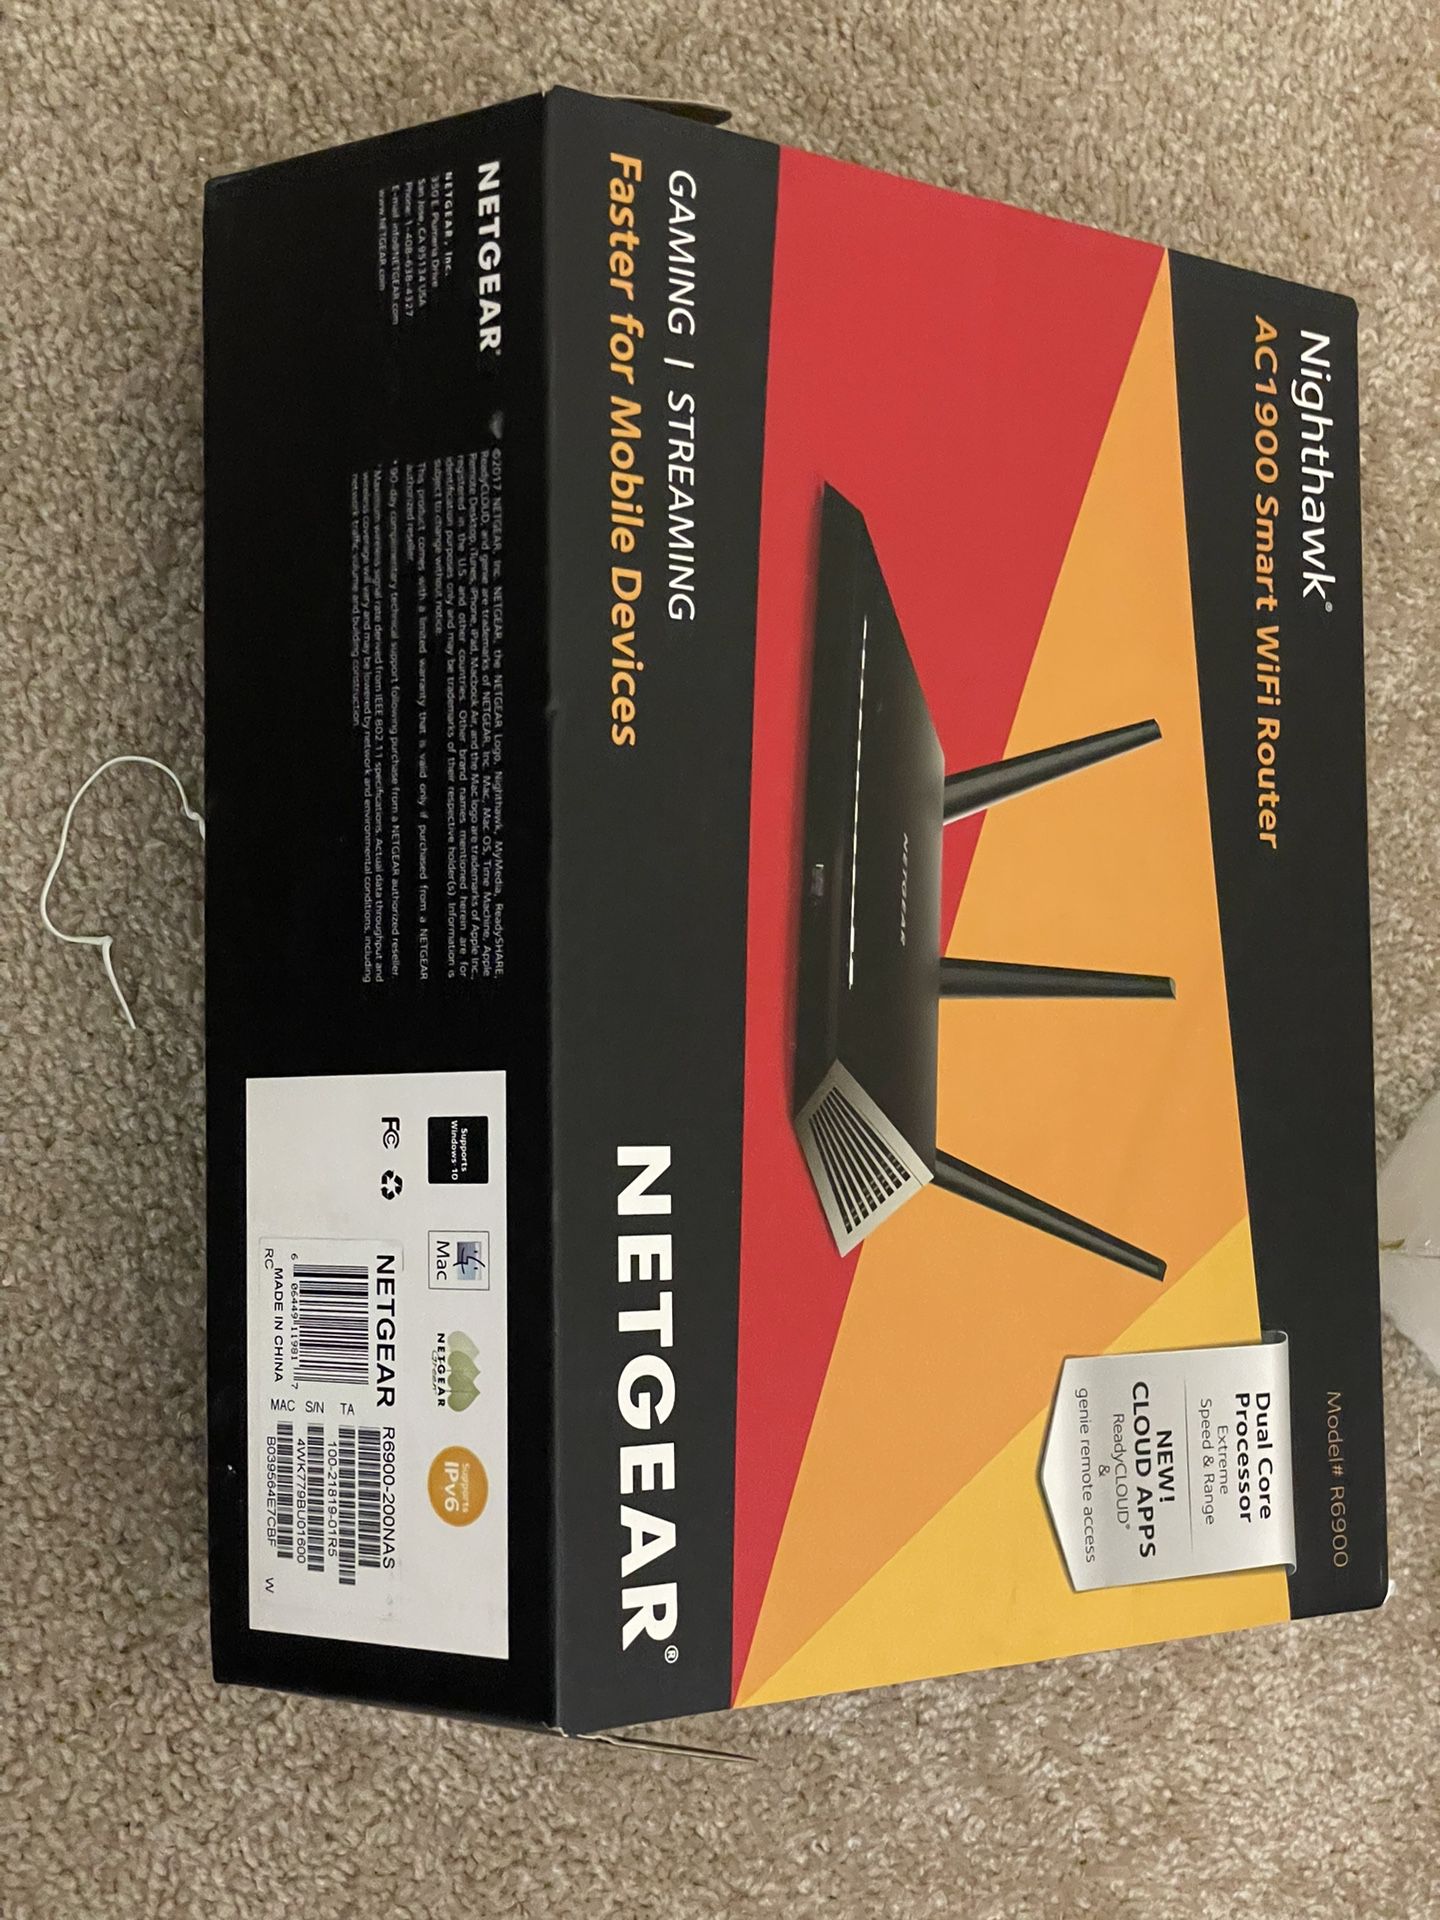 Netgear AC1900 Nighthawk WIFi Wireless Router